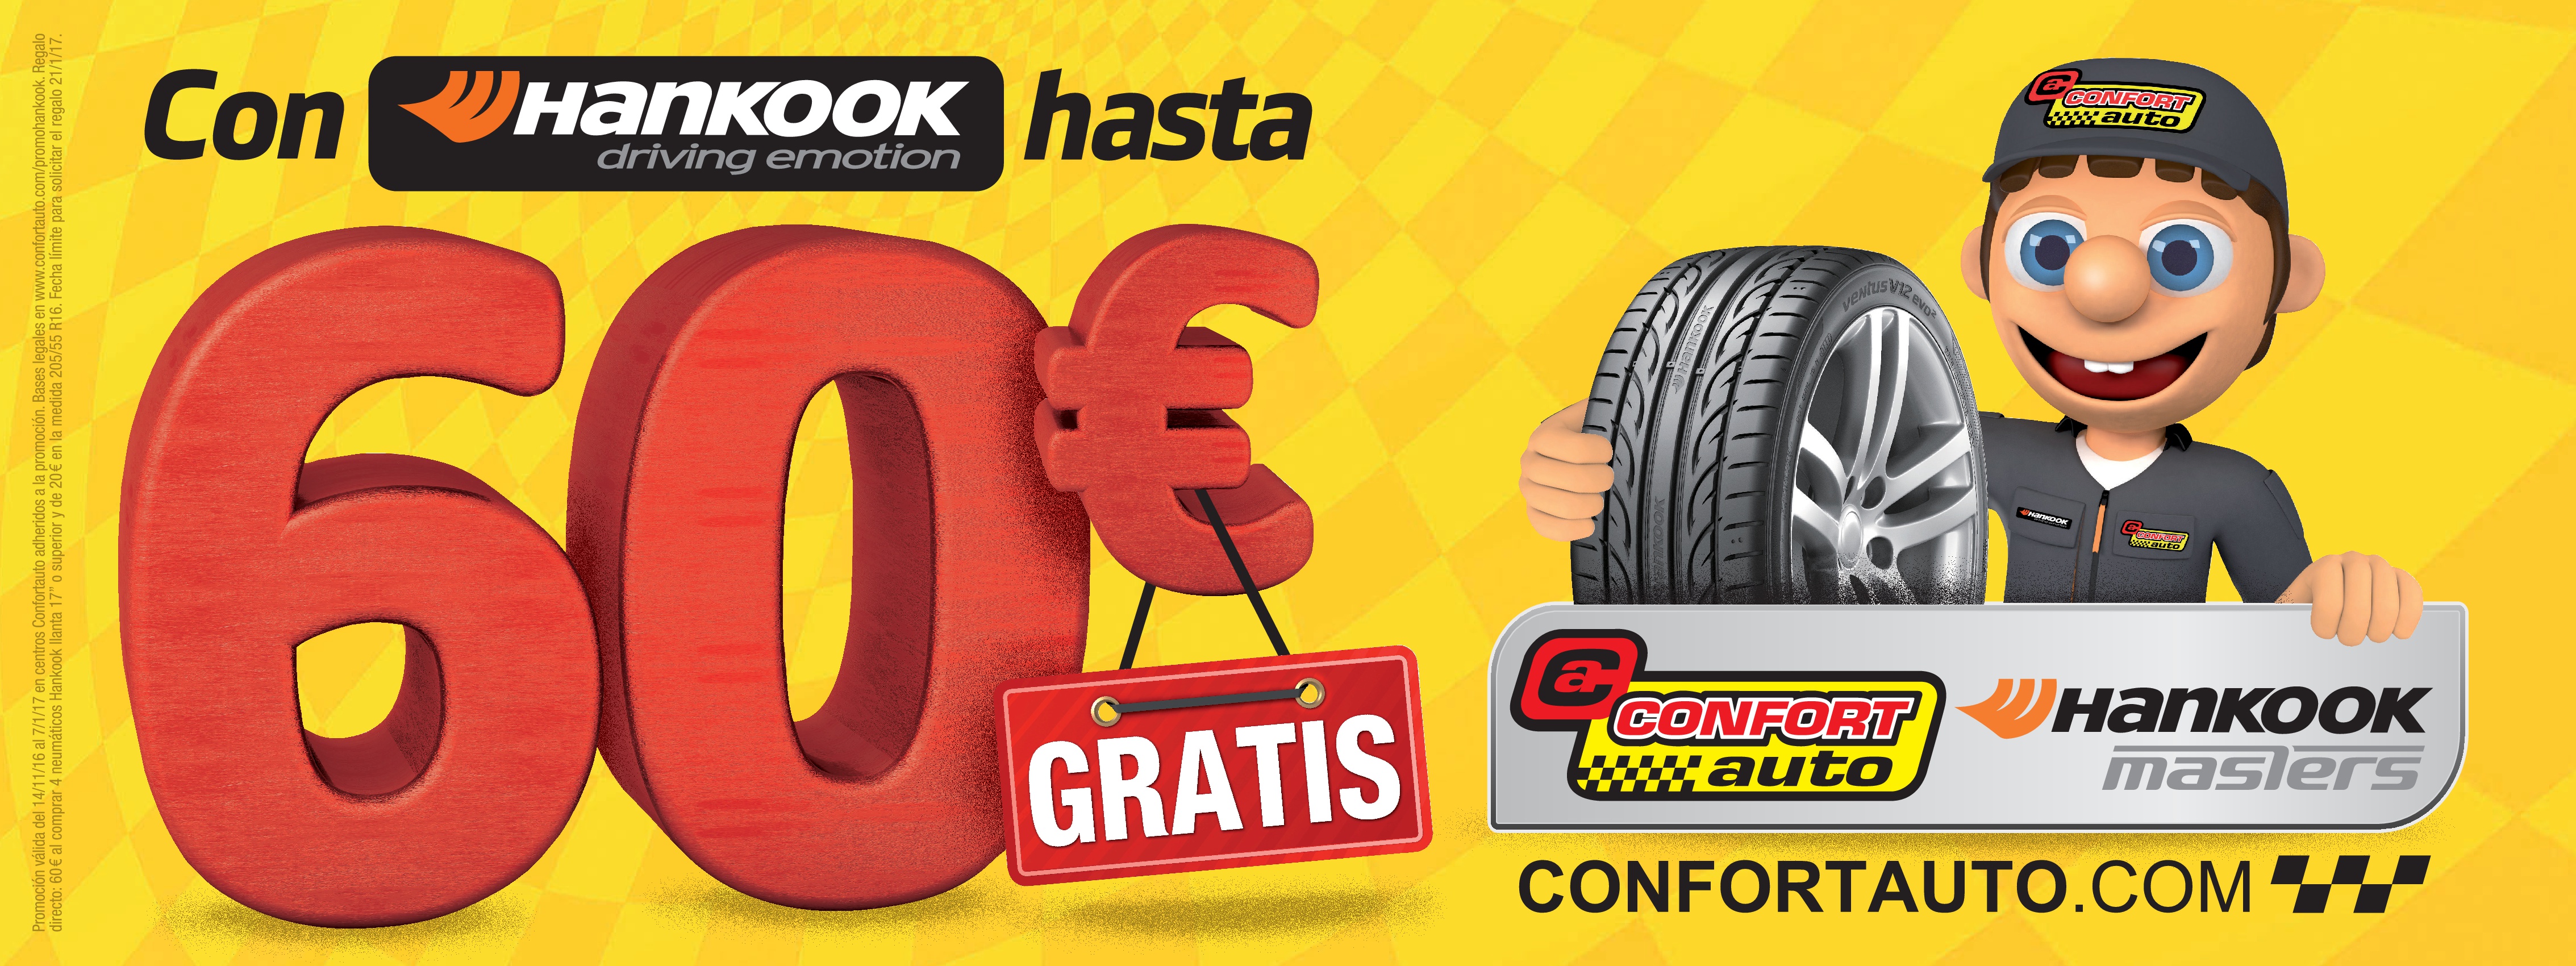 Consigue hasta 60€ montando Neumáticos Hankook